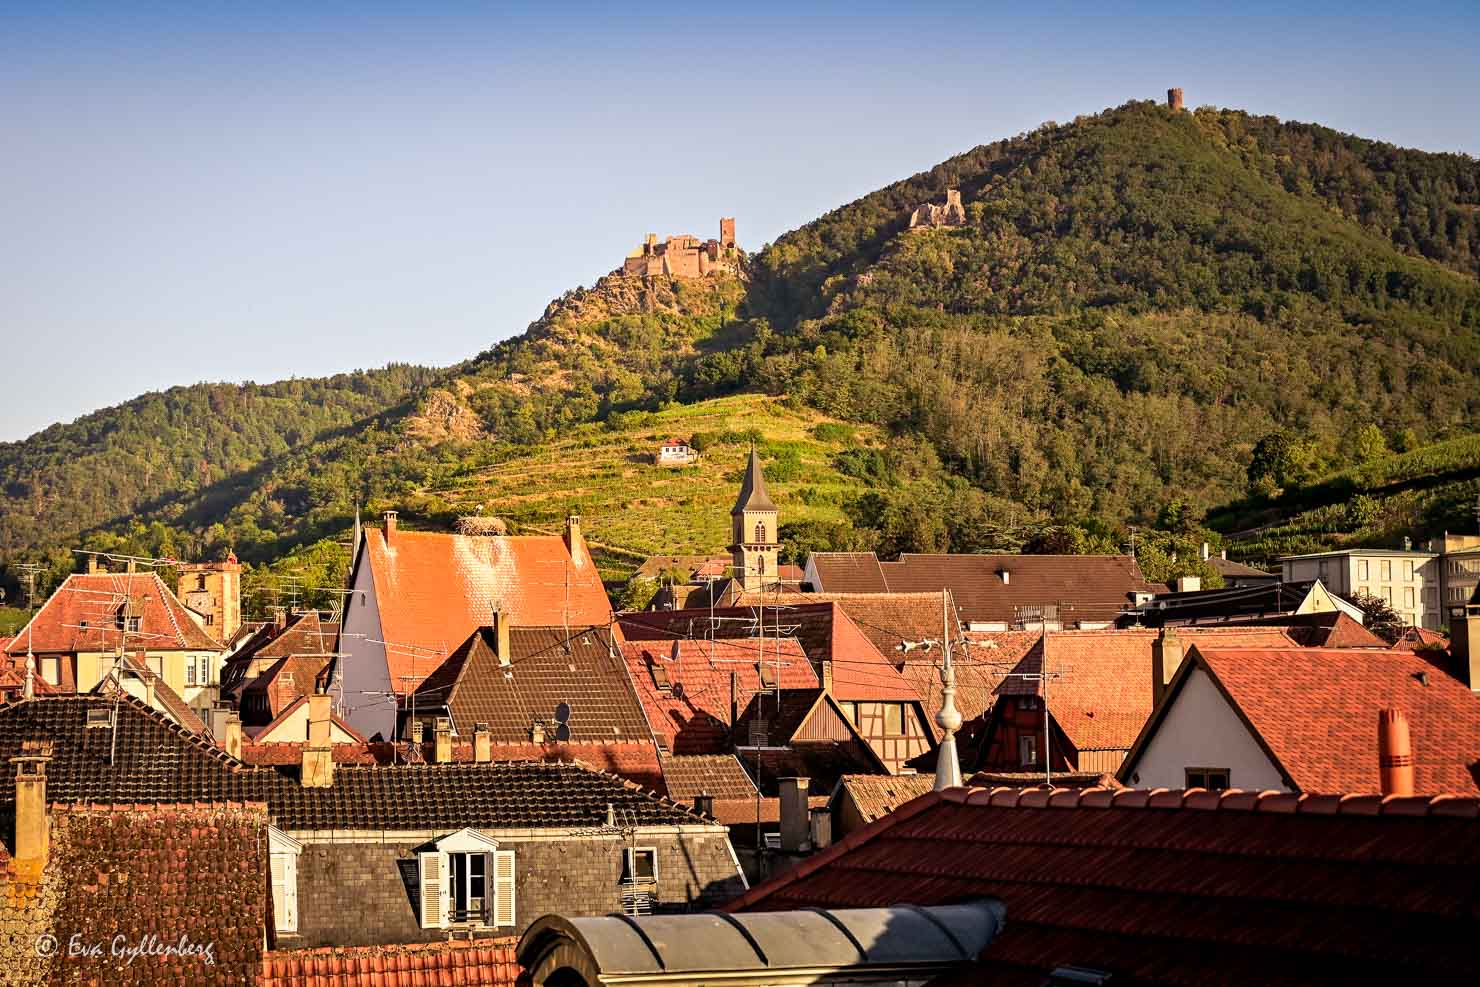 Ribeauville från ovan med utsikt över stadens tak och slottet på kullen